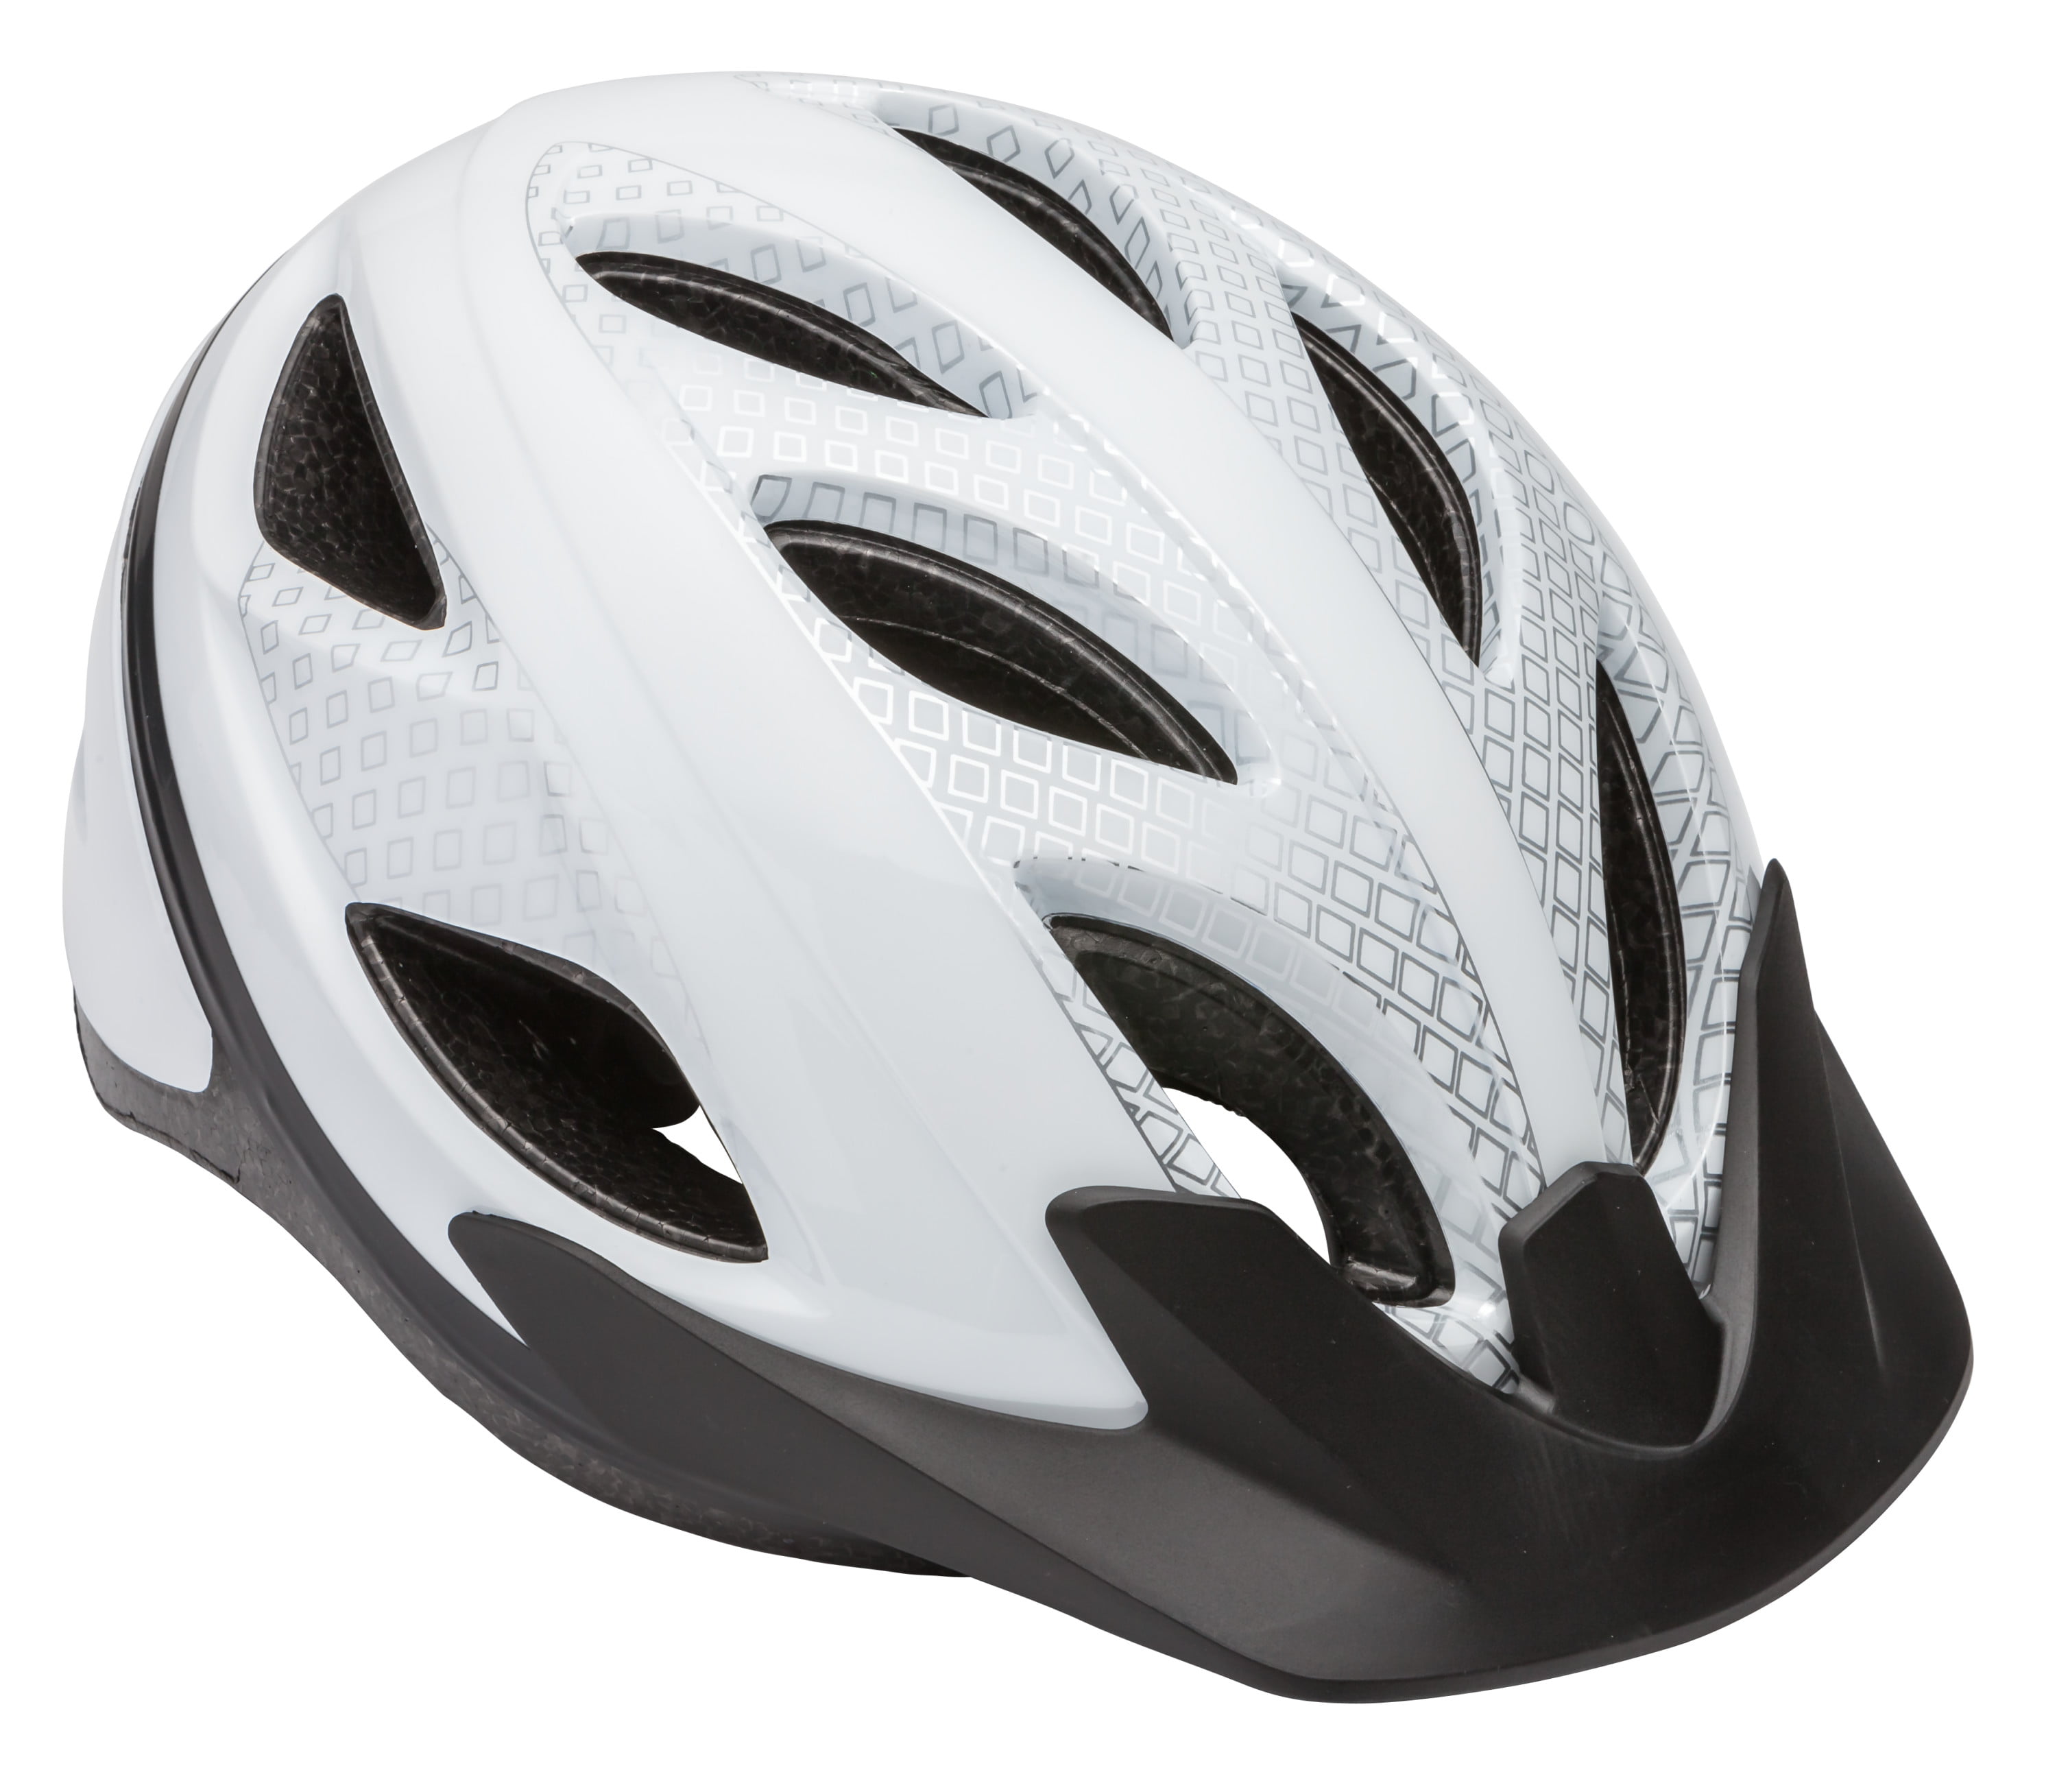 Schwinn Pathway Adult Bicycle Helmet 